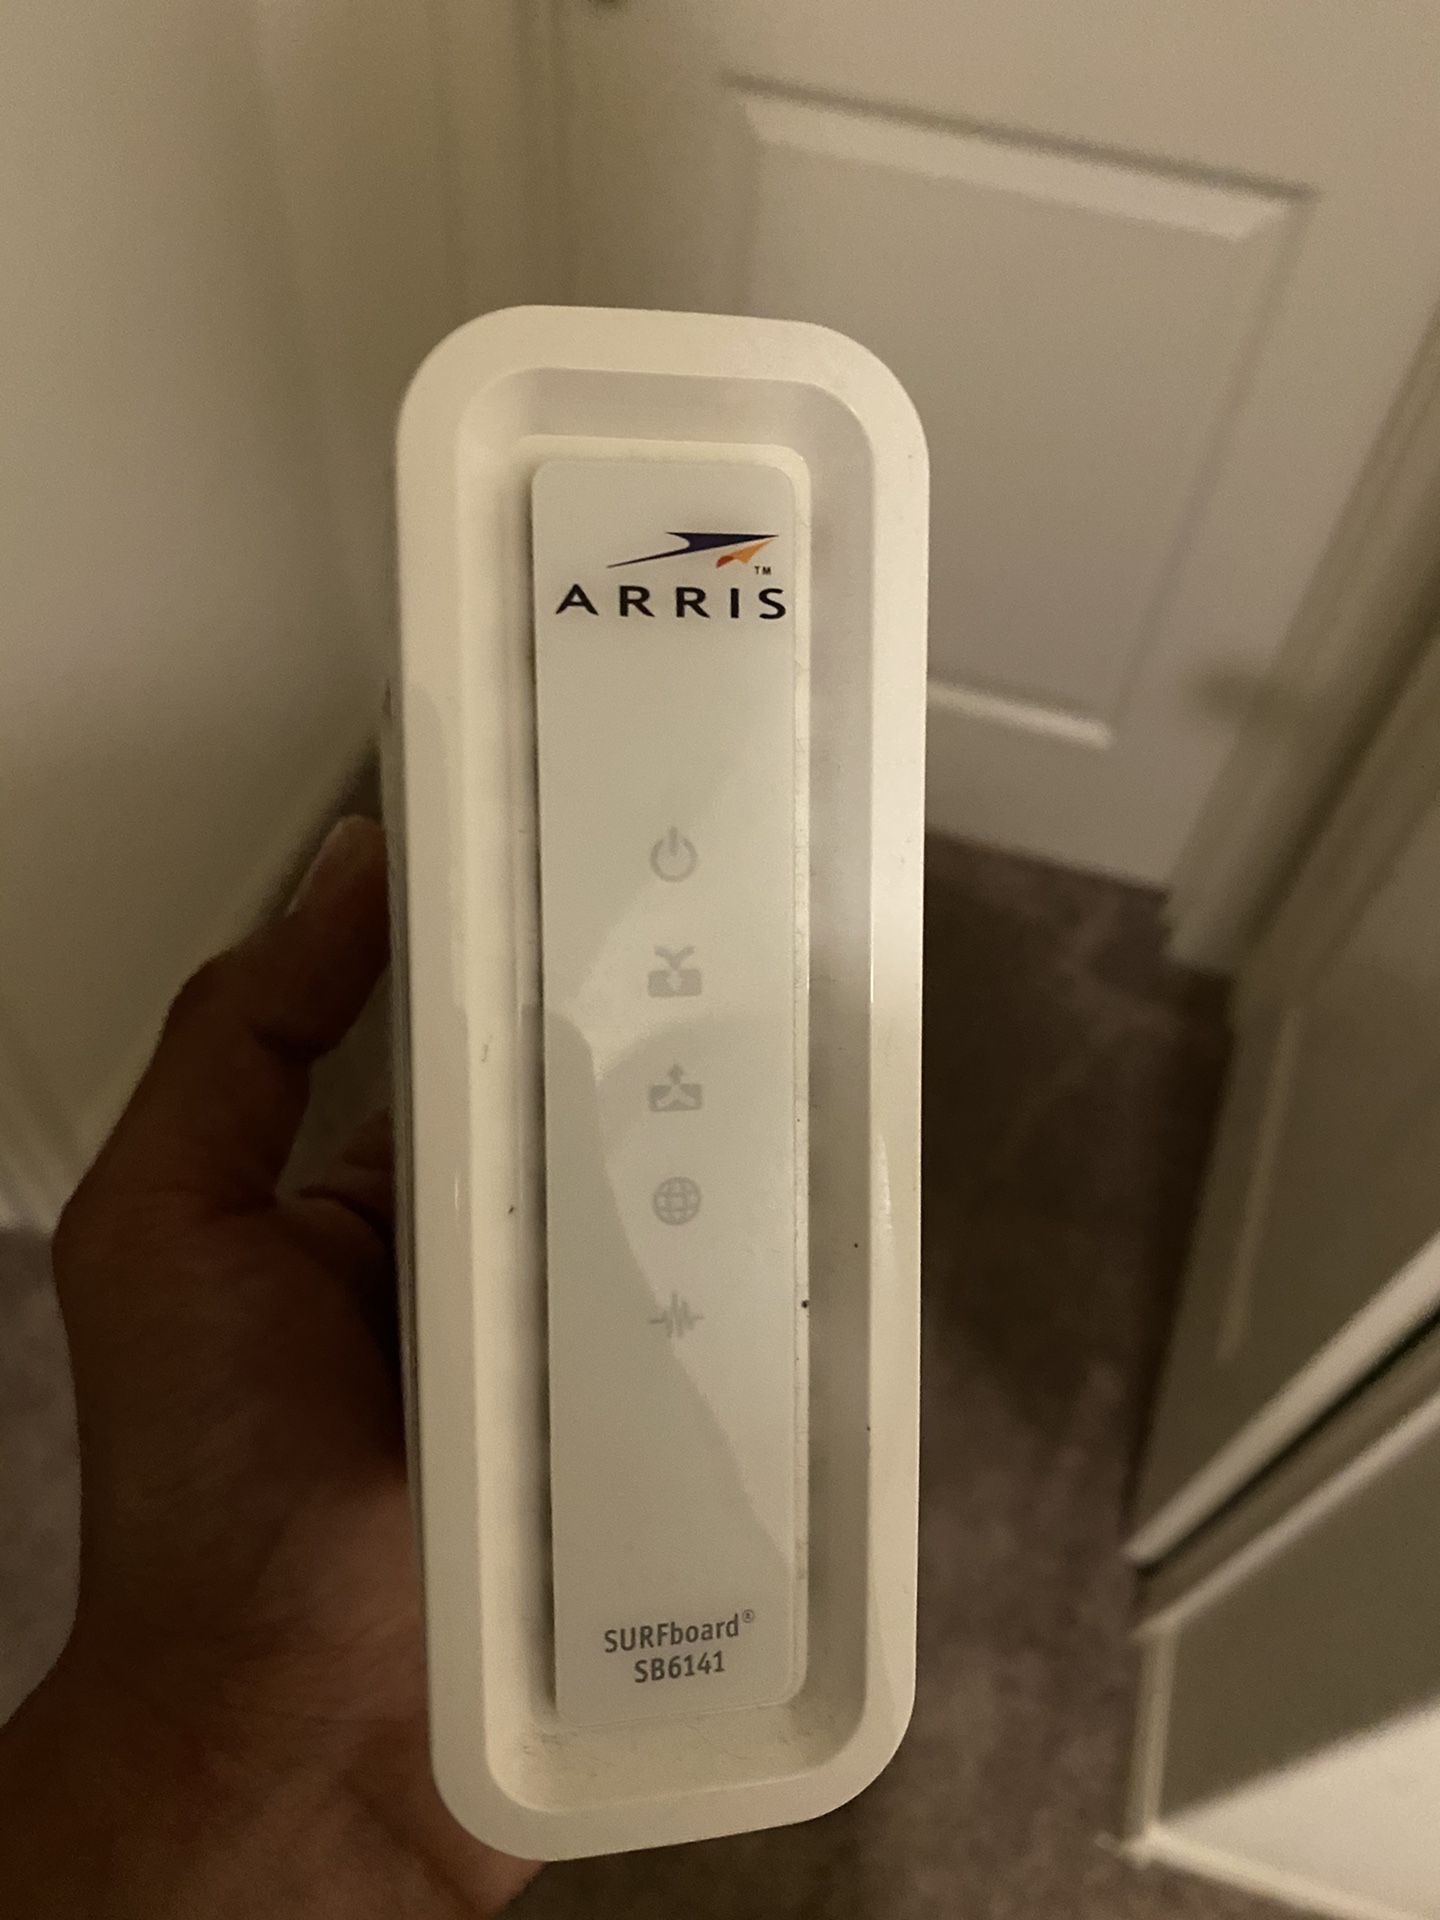 Arris sb6141 modem (xfinity)